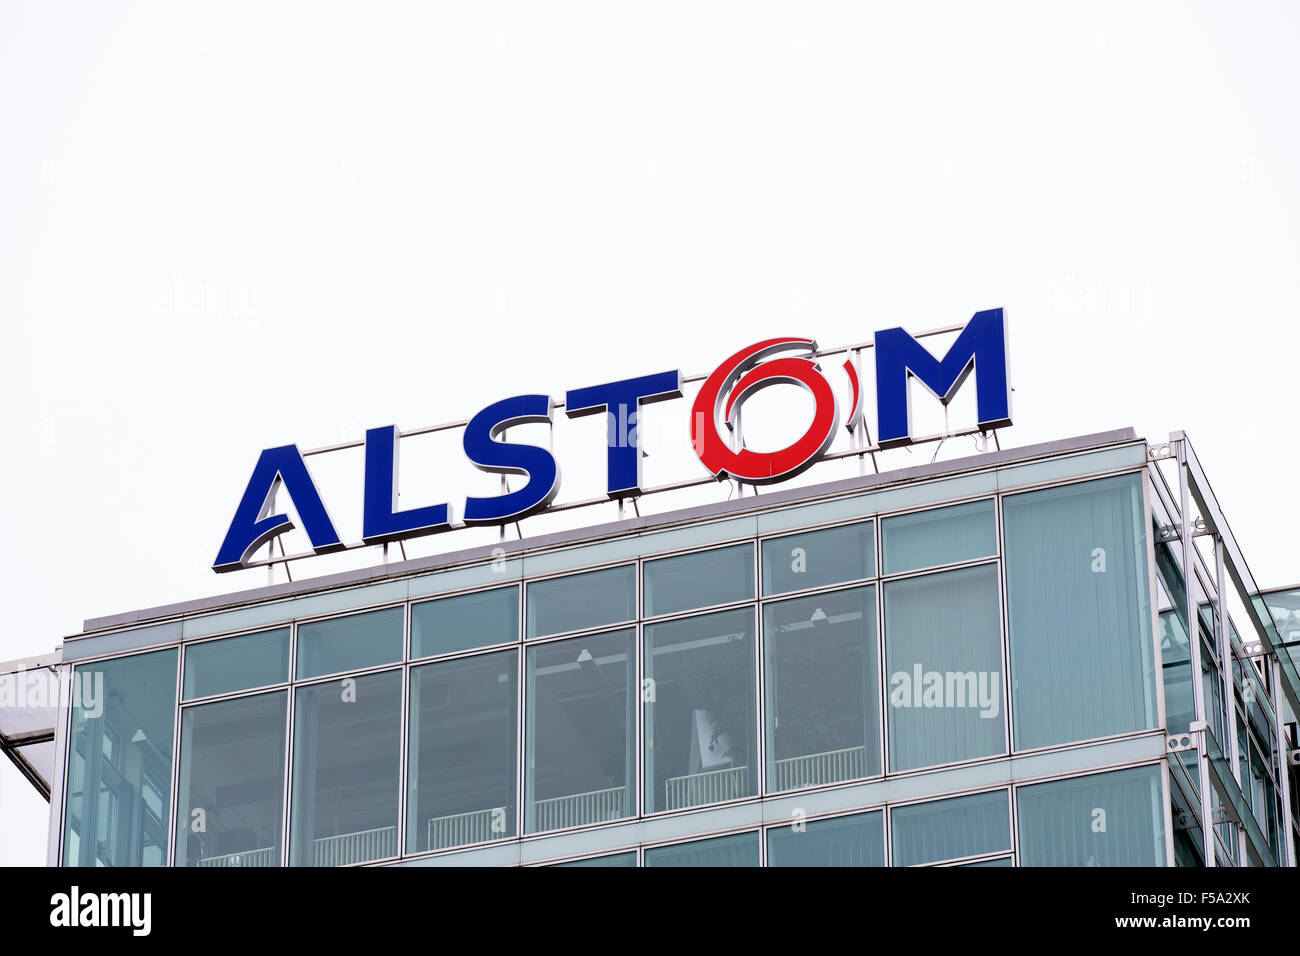 Baden, Suisse. 31 octobre 2015. Derniers jours de l'logo Alstom sur le toit du quartier général de l'énergie thermique avant de fusion et d'acquisition de General Electric le 2 novembre 2015. Crédit : Carsten Reisinger/Alamy Live News Banque D'Images